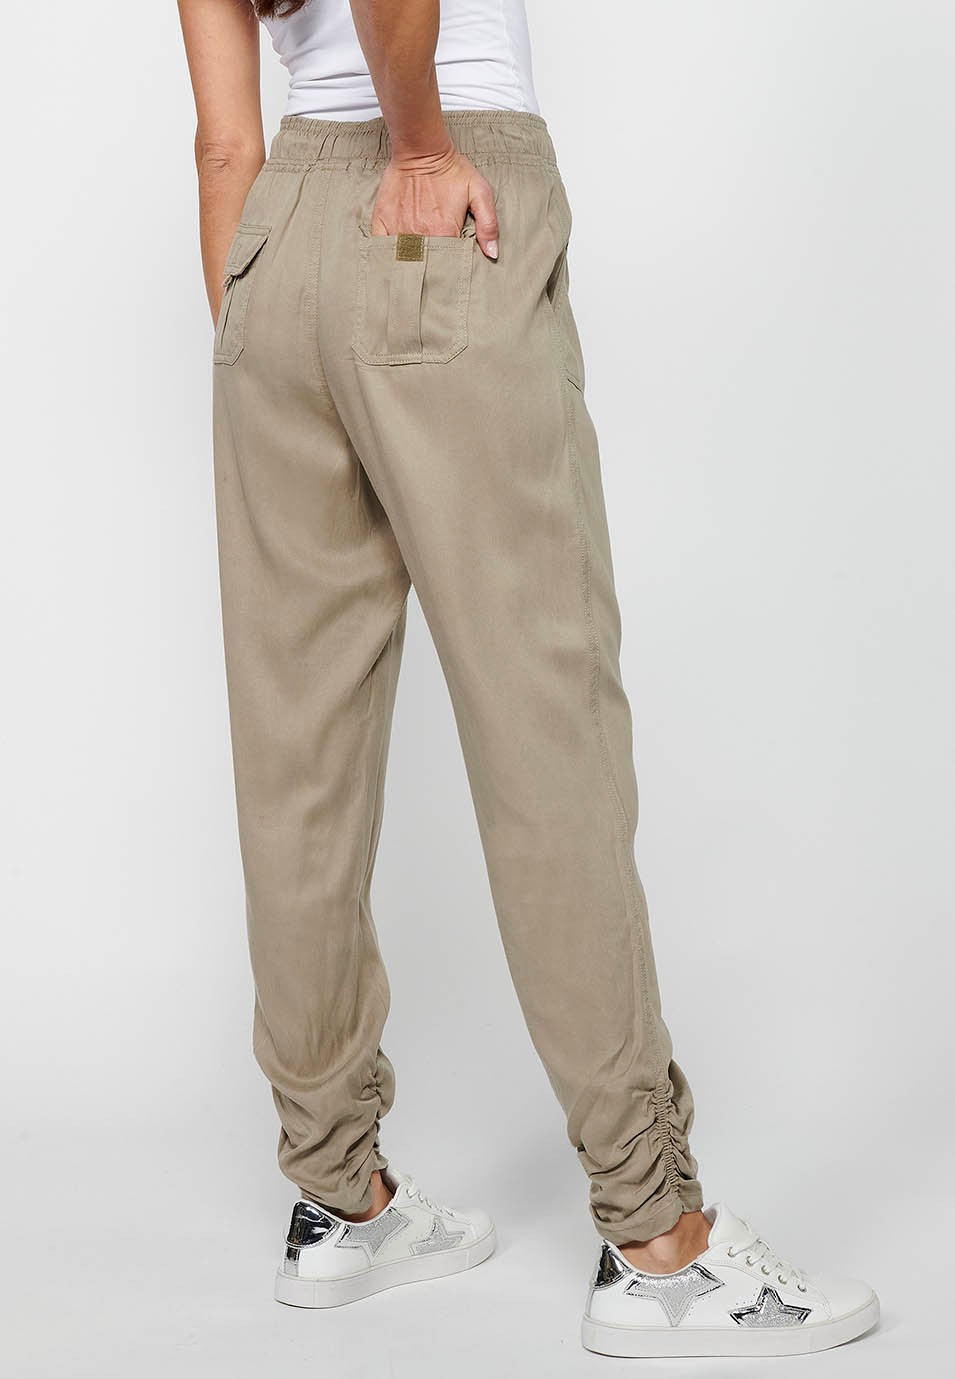 Pantalon de jogging long finition bouclée et taille caoutchoutée avec quatre poches, deux poches arrière à rabat en Gris pour Femme 5